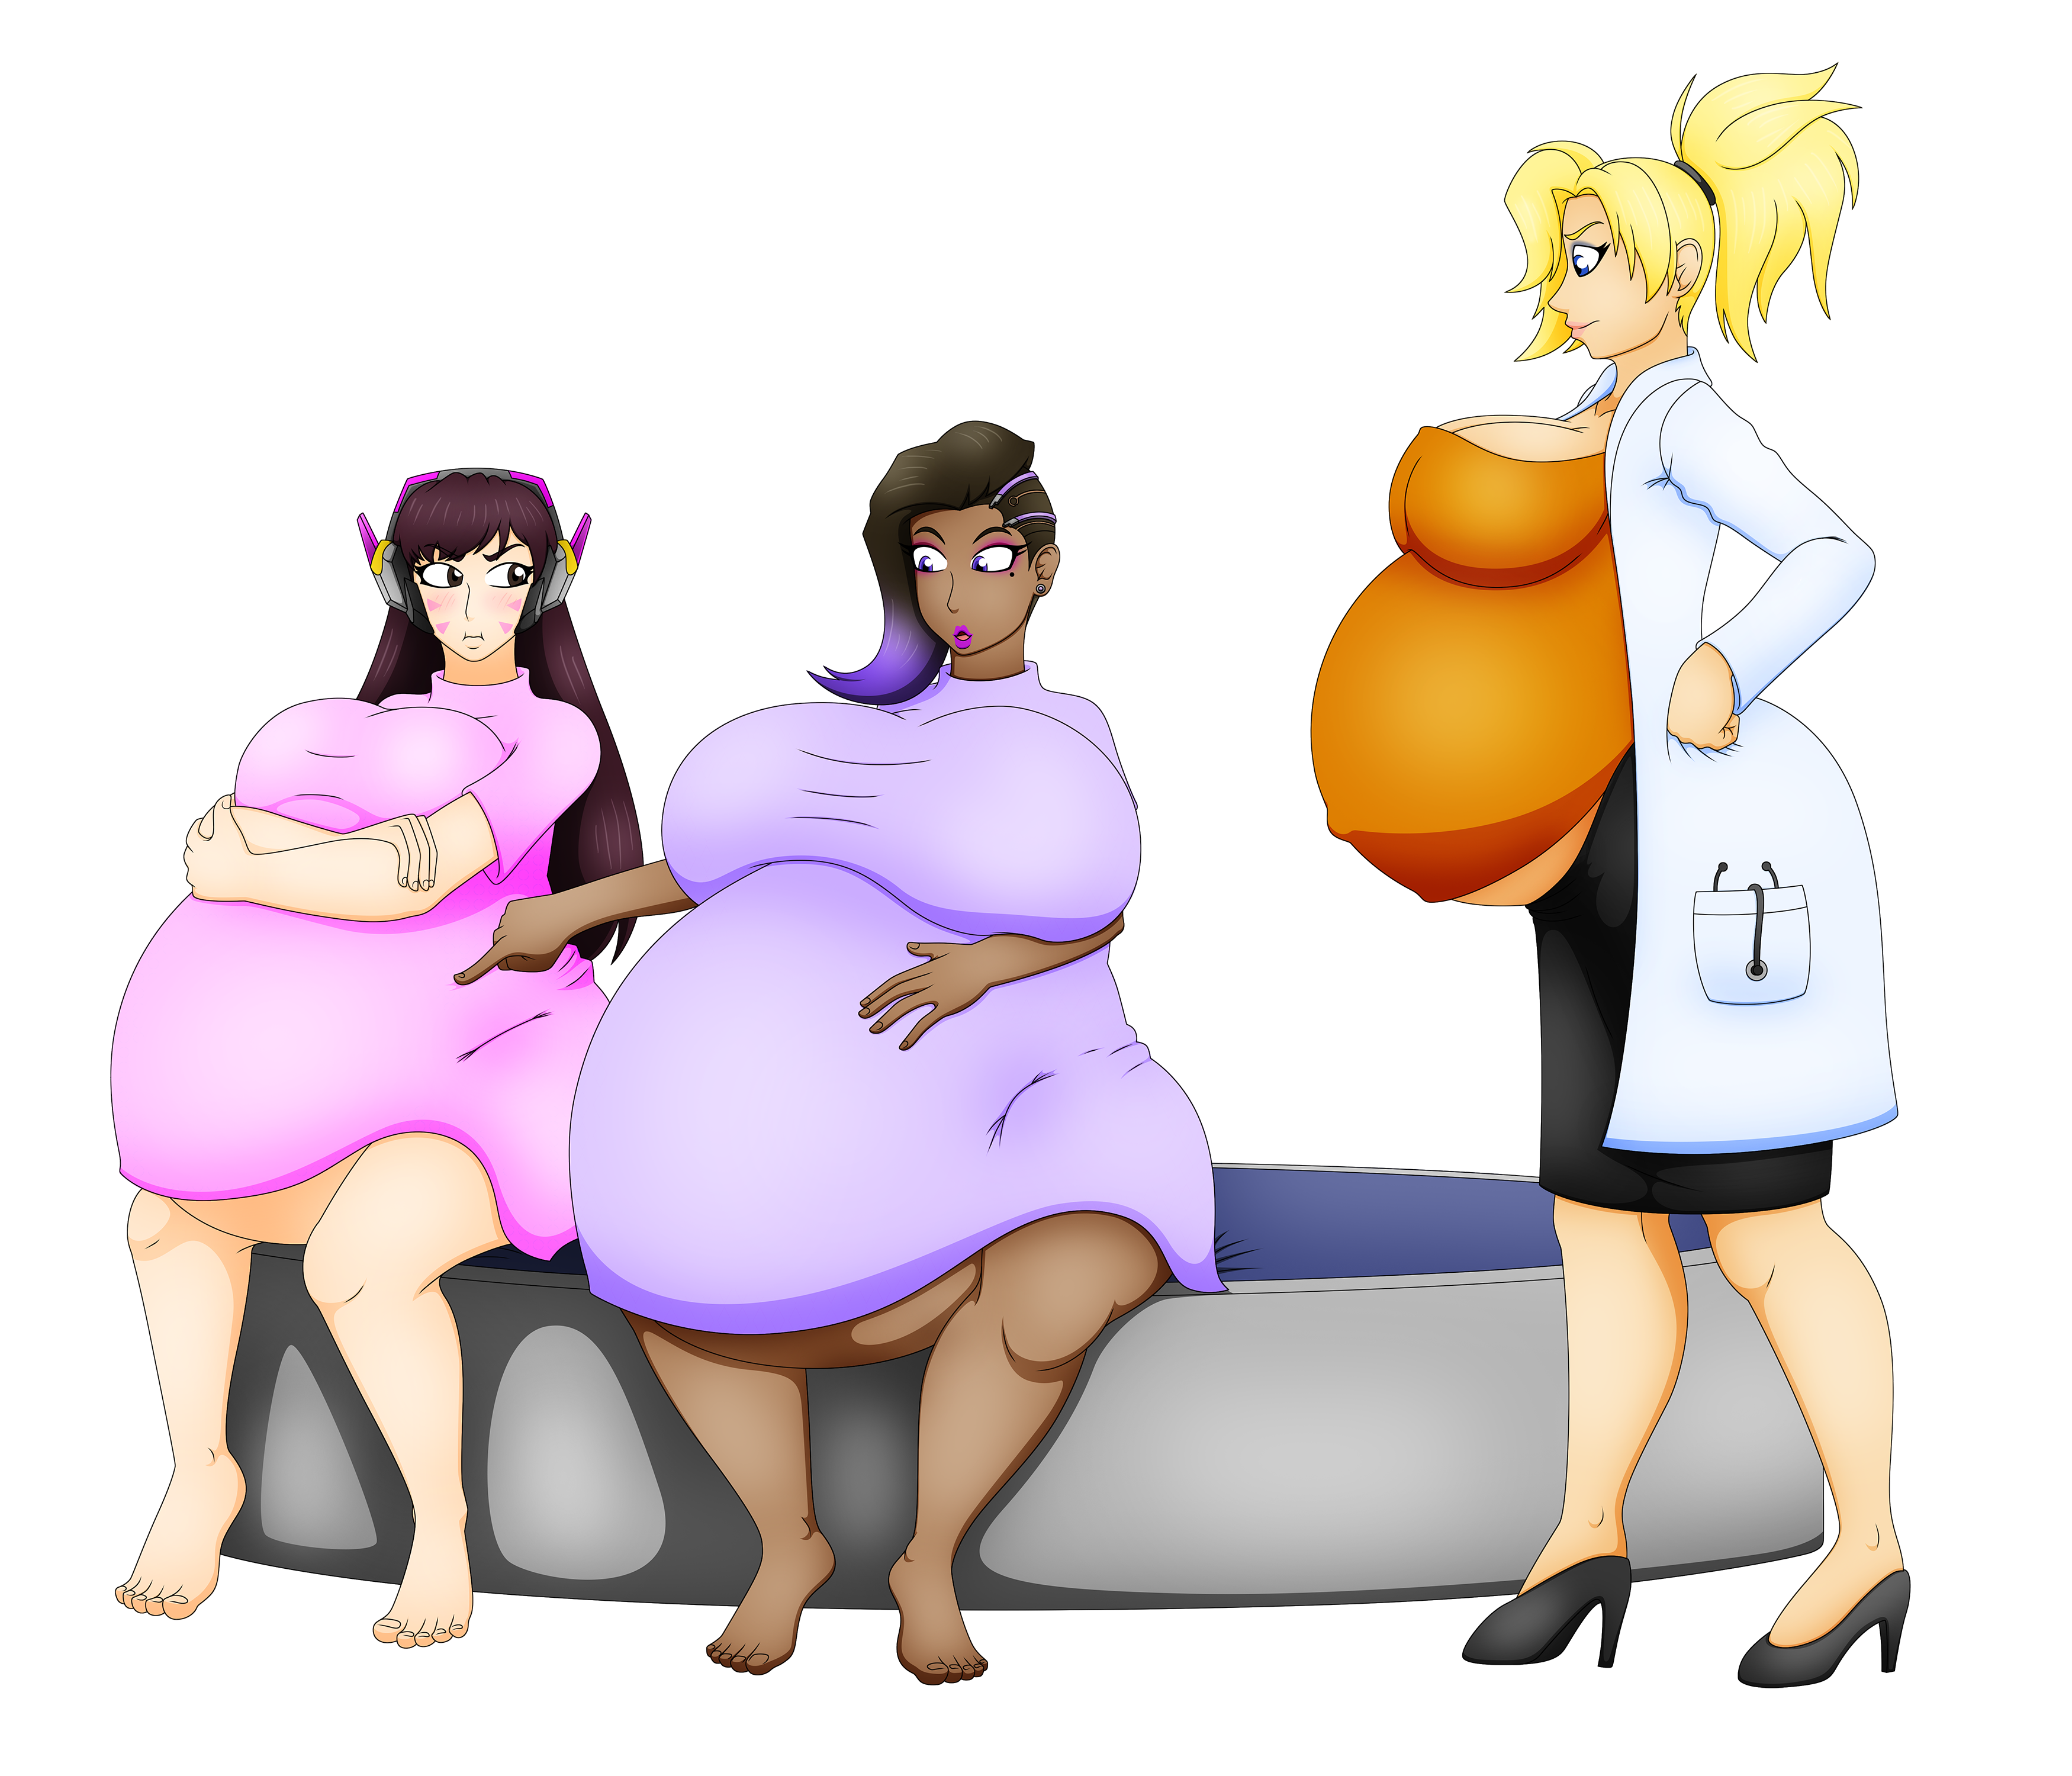 Белли инфлатион беременные. Беременность belly Expansion Vore. Биг прегнант Белли инфлатион. Belly inflation women